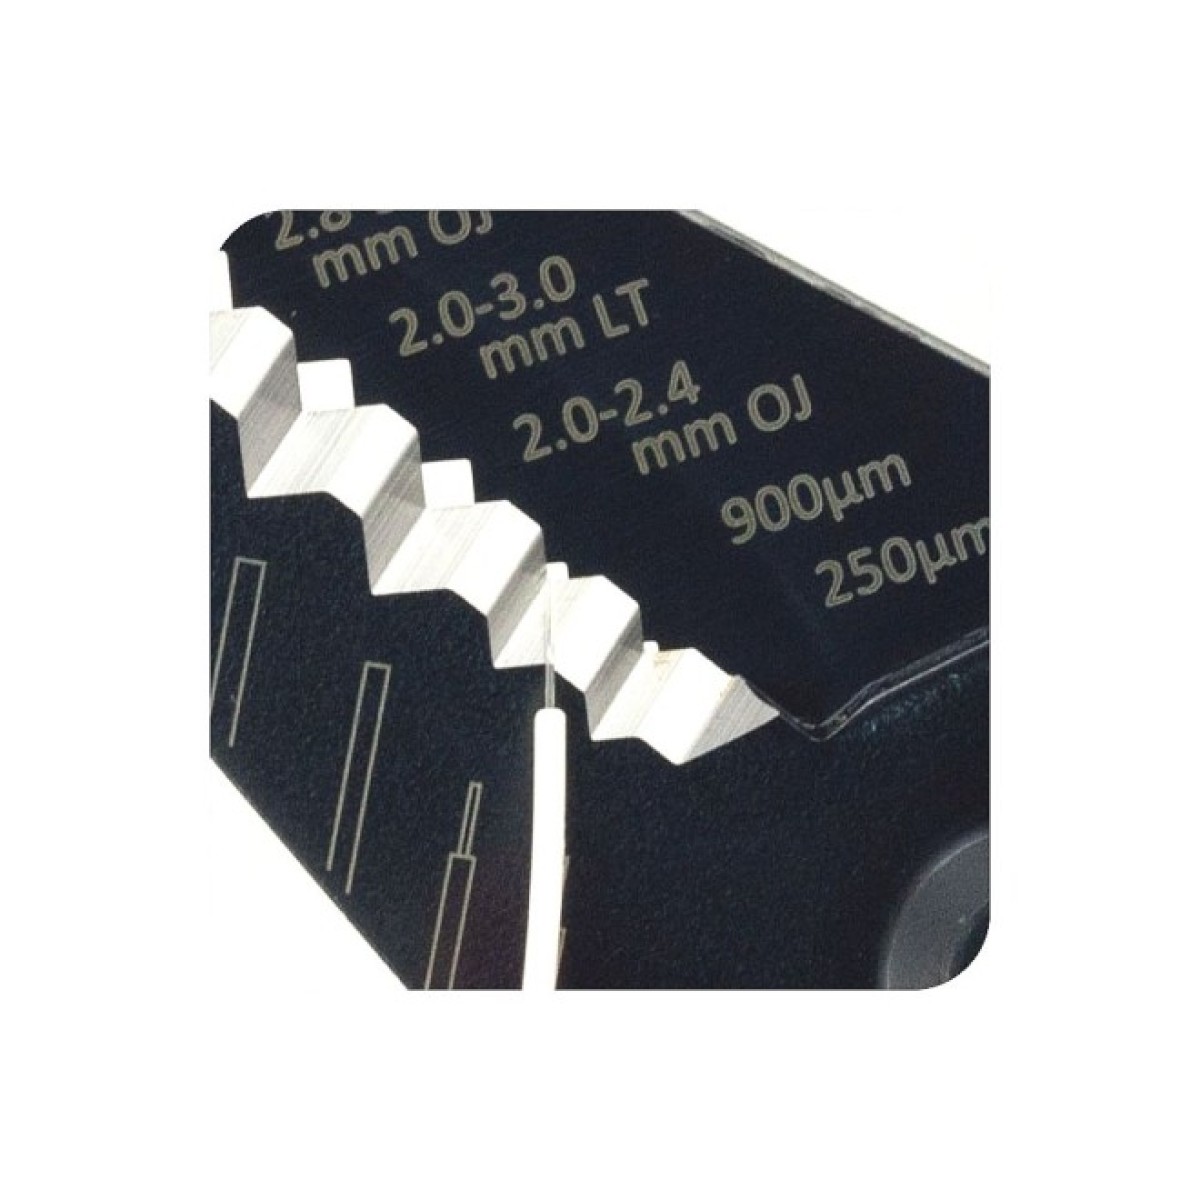 Інструмент (stripper) для зачистки оптичних волокон, 250μm, 900μm, оболонки та туби 2.0-3.0 мм, Hanlong 98_98.jpg - фото 3